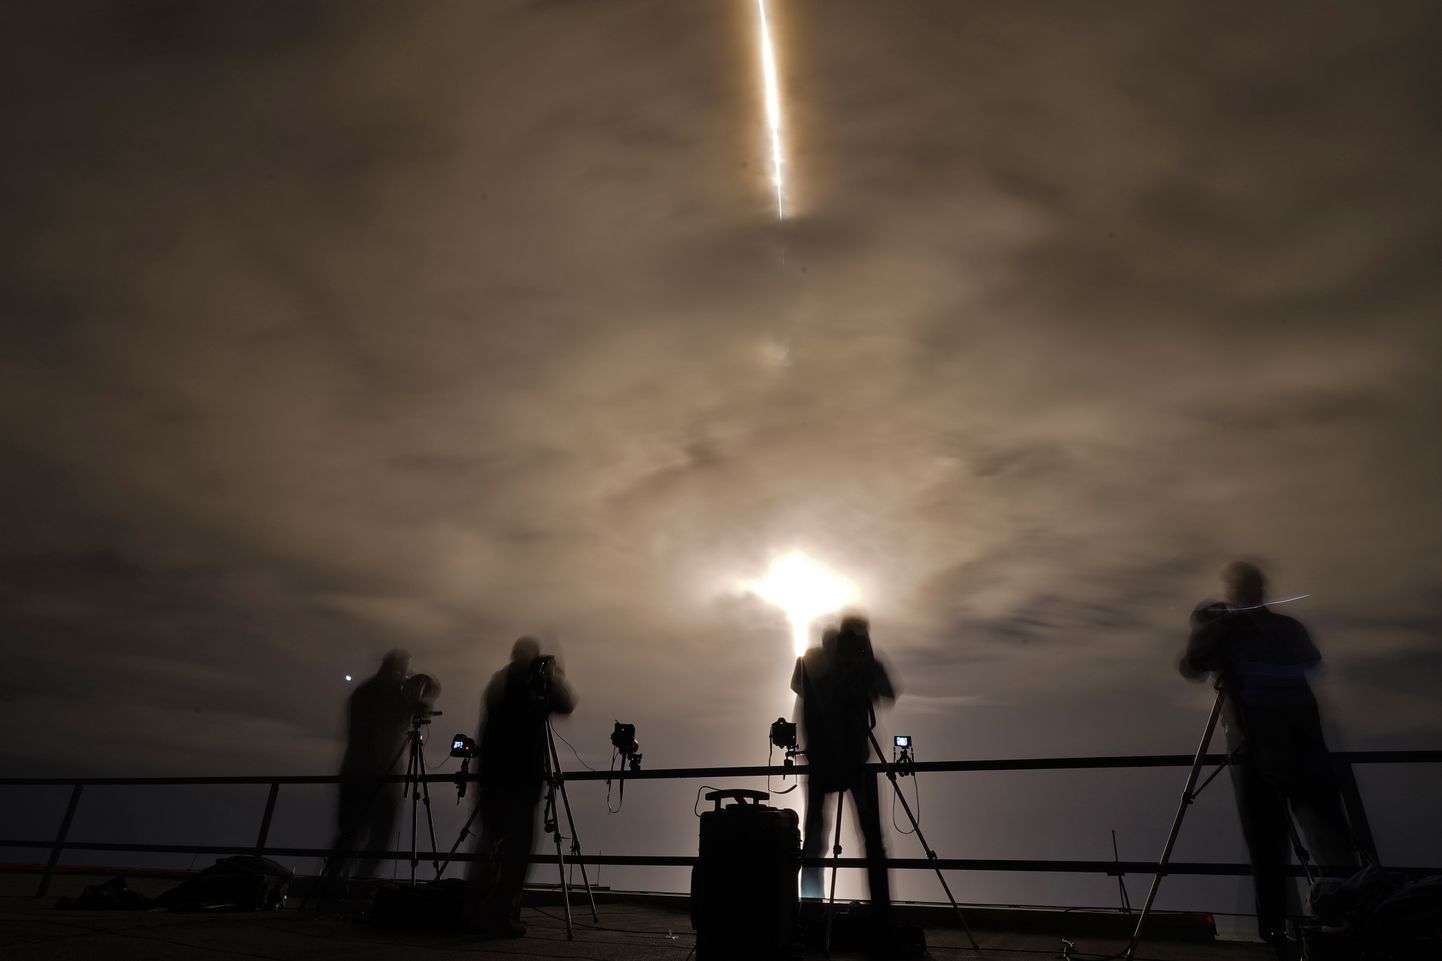 Fotograafid Kennedy kosmosekeskuses SpaceX-i kosmoselaeva starti jäädvustamas.